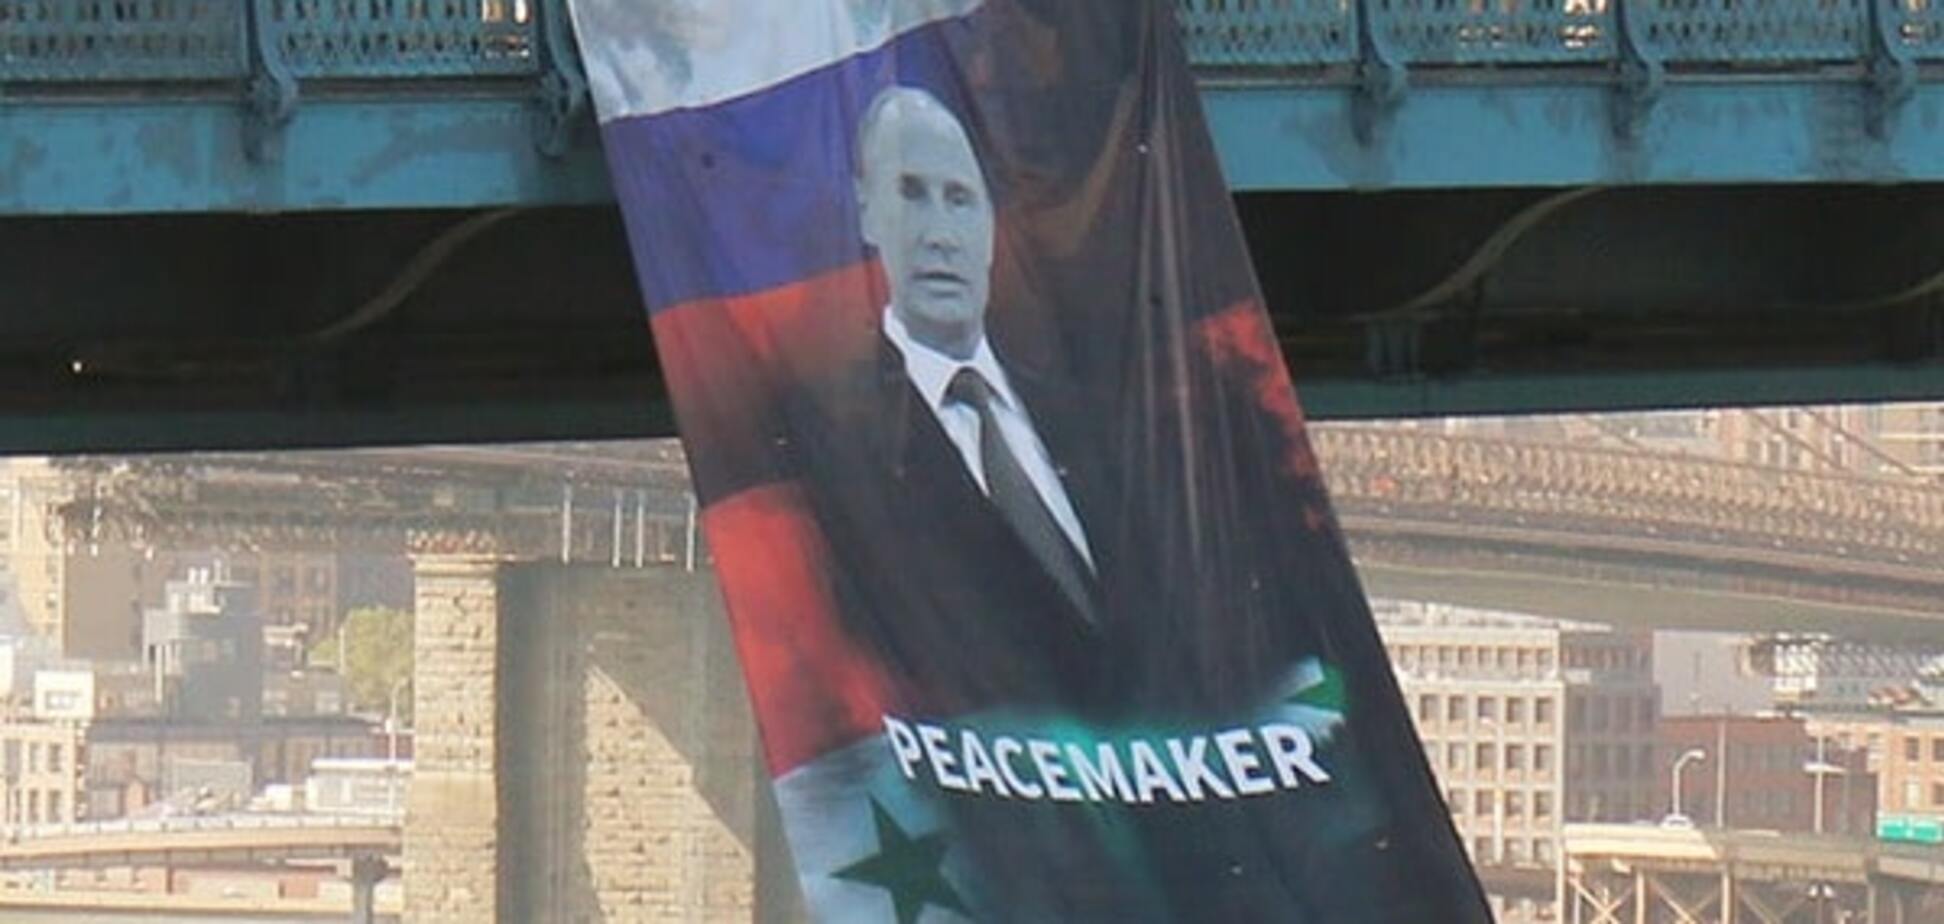 Баннер с Путиным повесили на мосту в Нью-Йорке